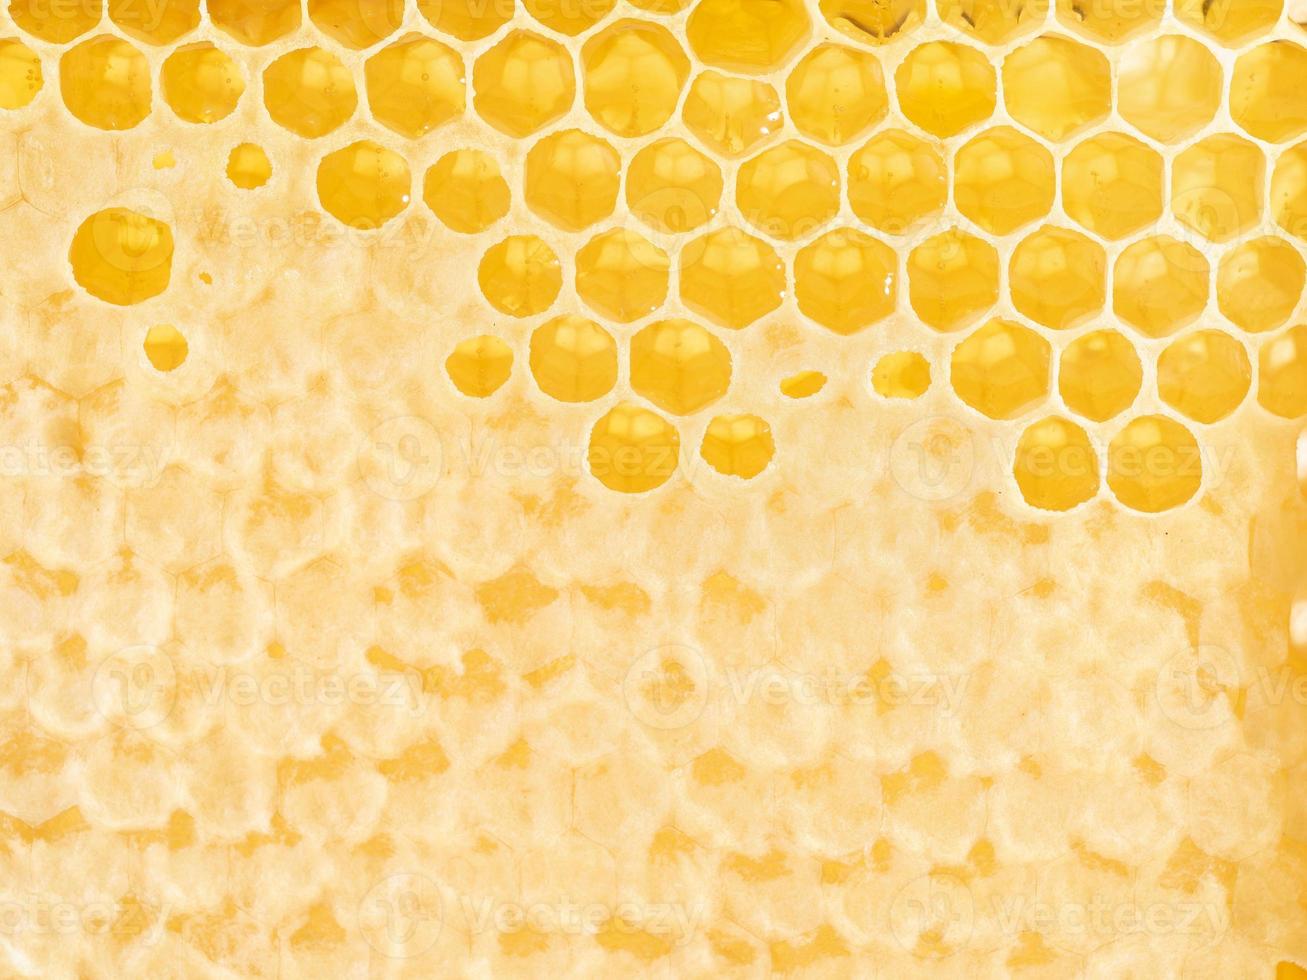 bijenhoningraatclose-up, verse vezelige druipende zoete honing, macroachtergrond foto